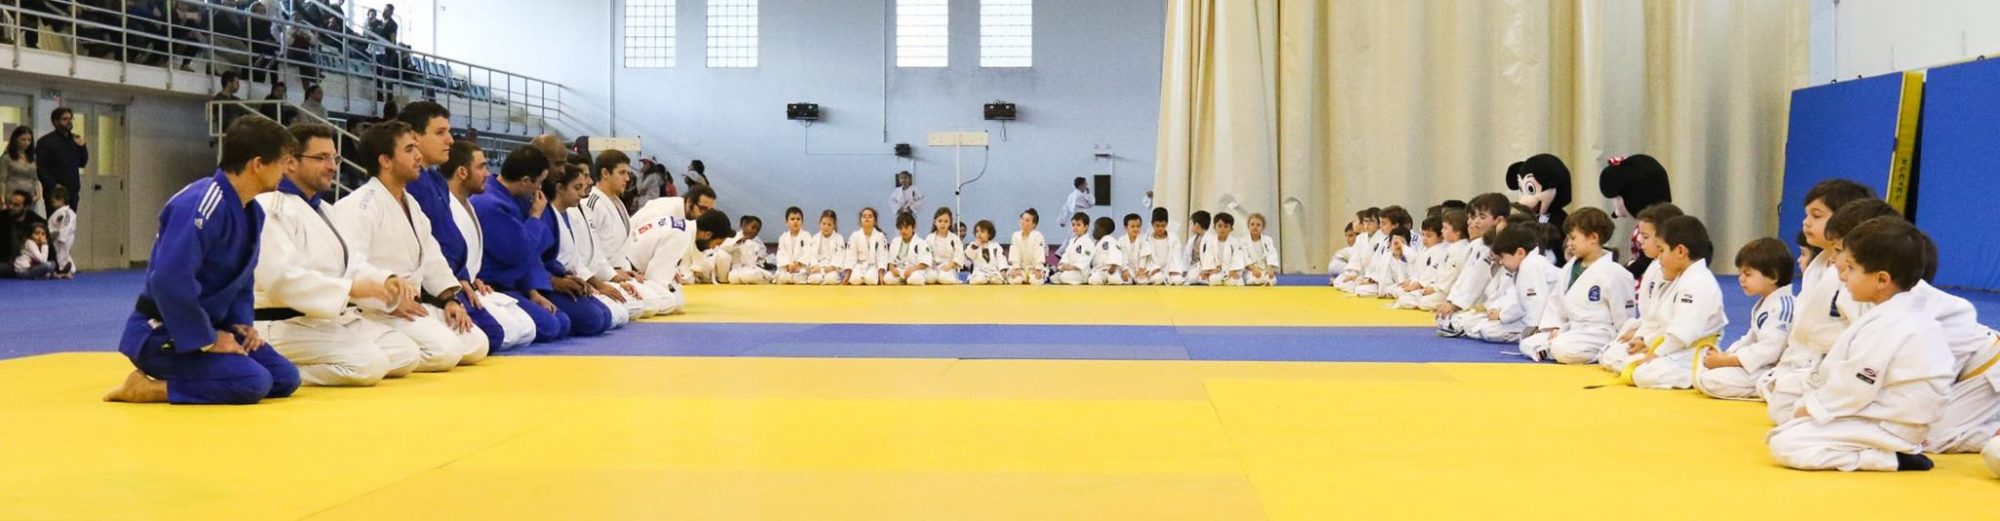 Clube de Judo Hajime